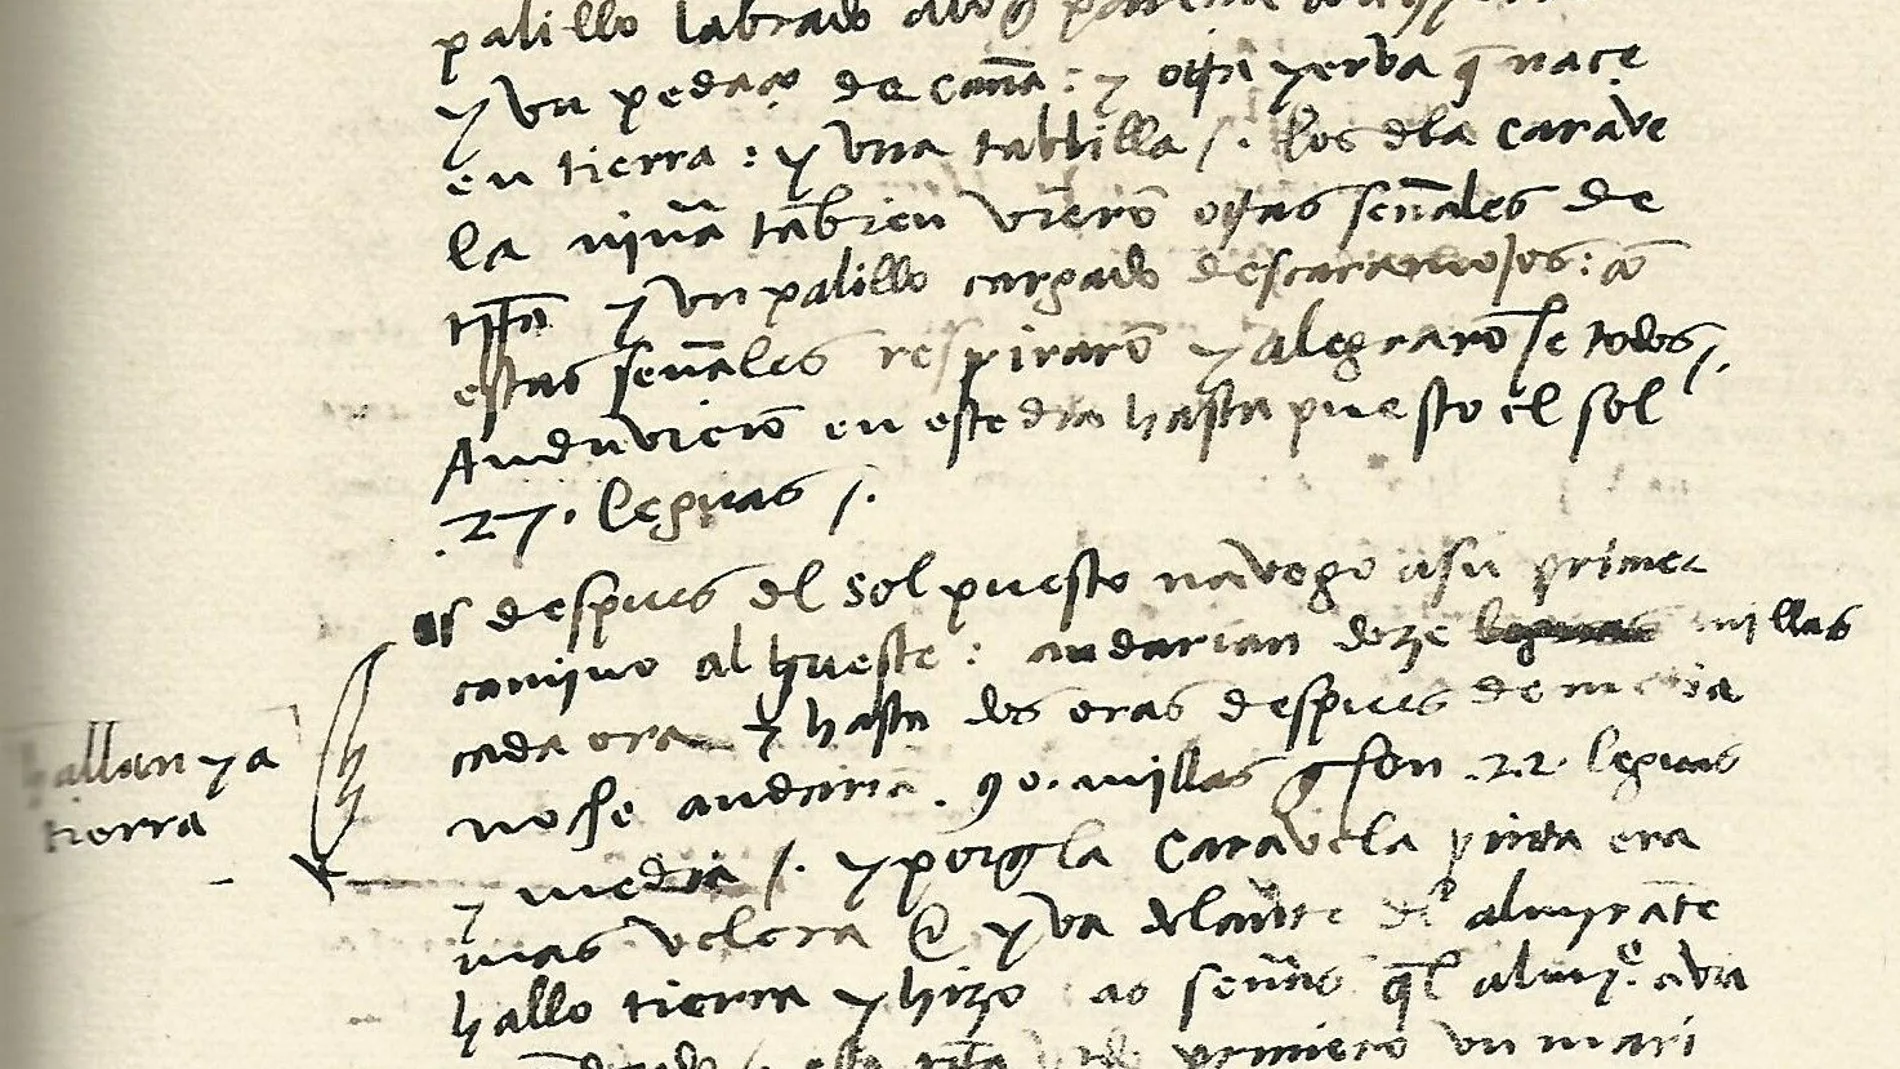 Diario de Colón, se anota que "hallan ya tierra".